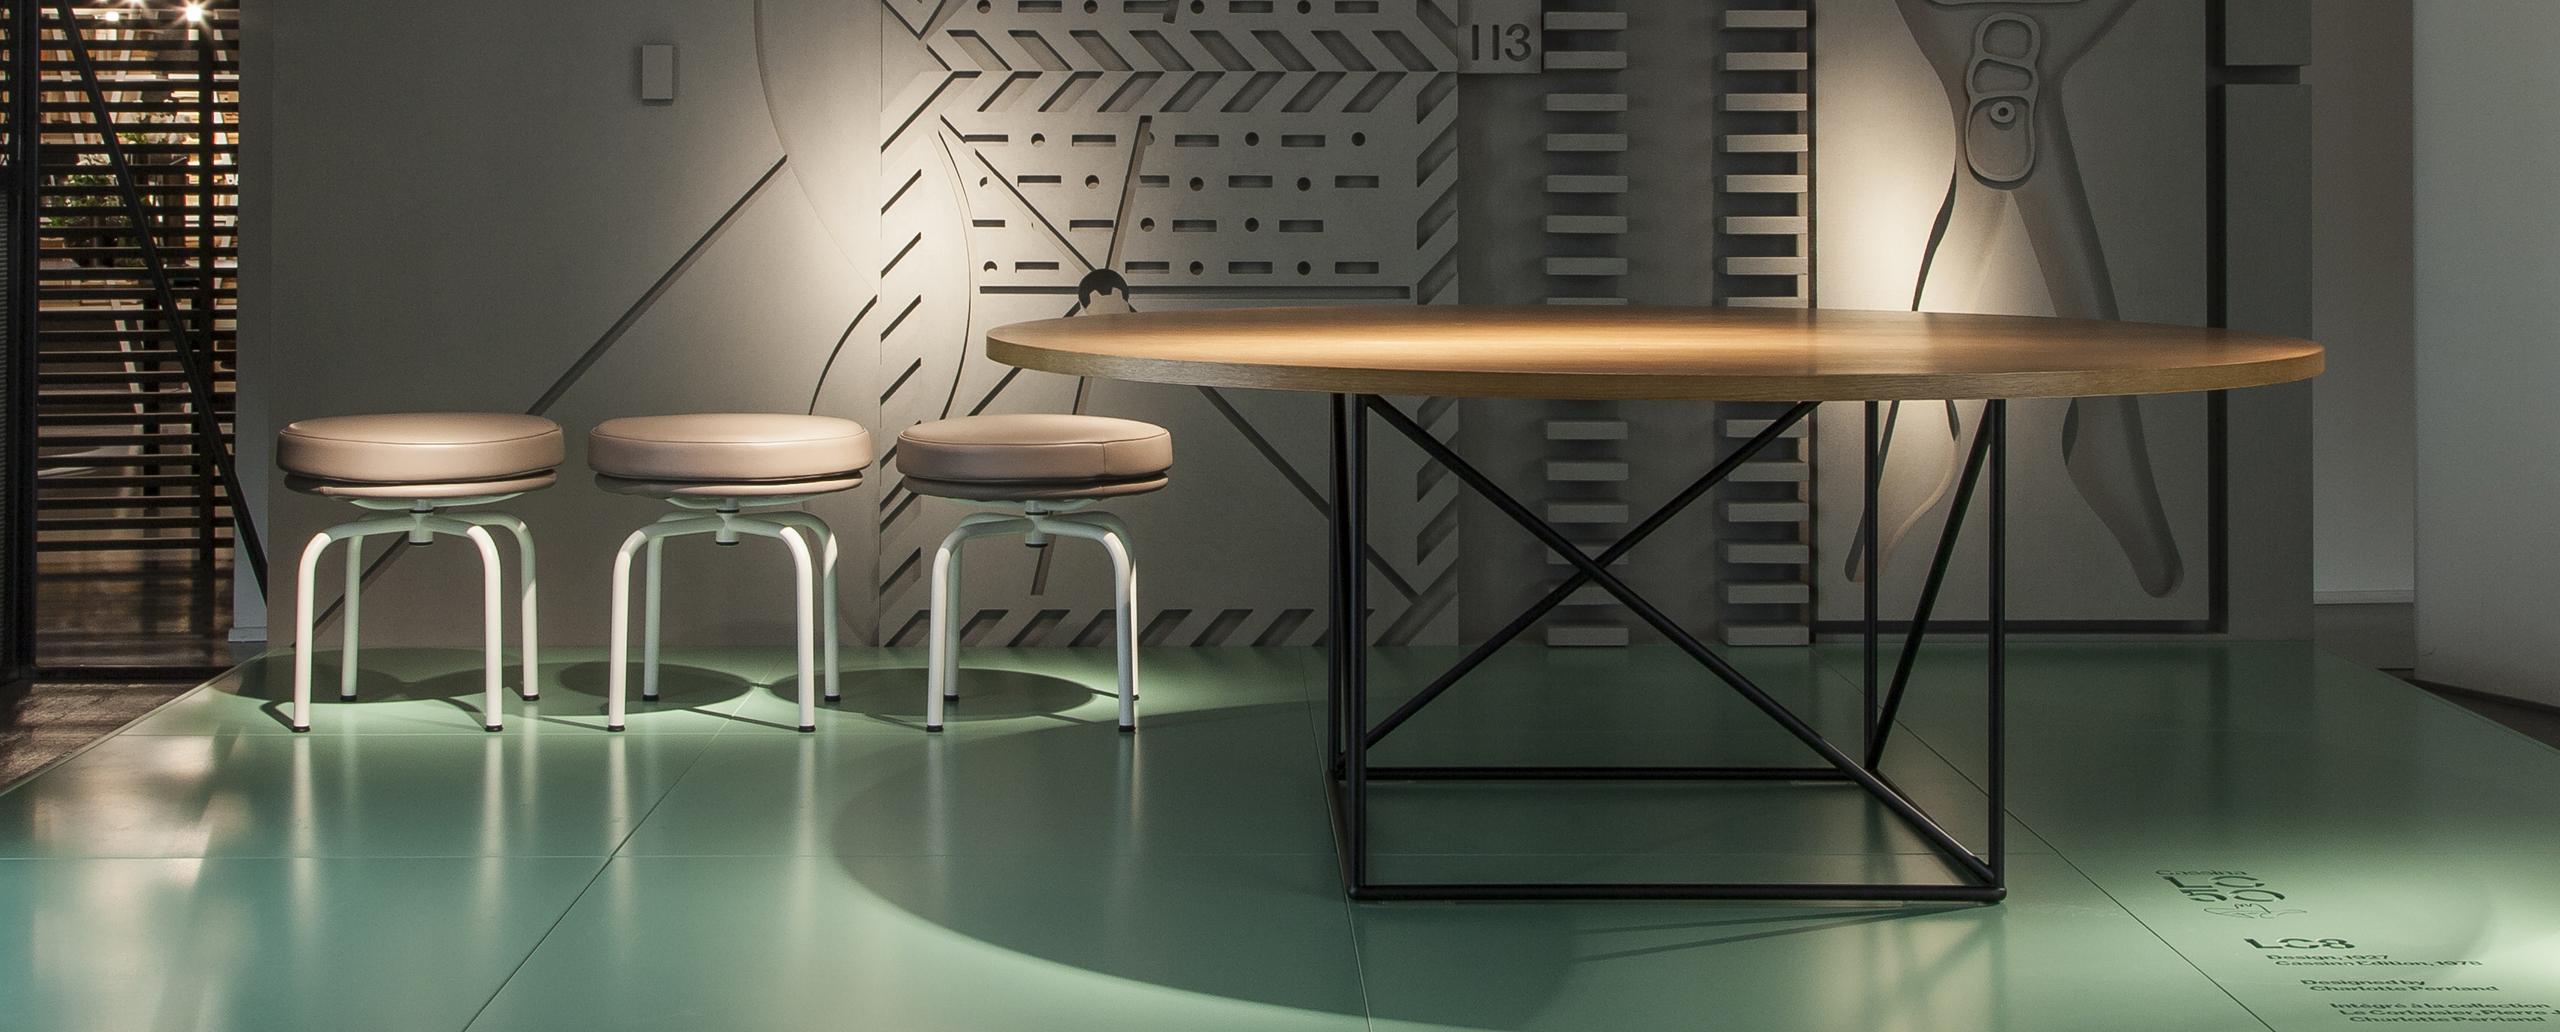 Tisch, entworfen von Le Corbusier im Jahr 1958. Neu aufgelegt im Jahr 2010.
Hergestellt von Cassina in Italien.

Dieser organische und doch rationale Tisch wurde 1958 von Le Corbusier entworfen. Seine charakteristische Konstruktion besteht aus